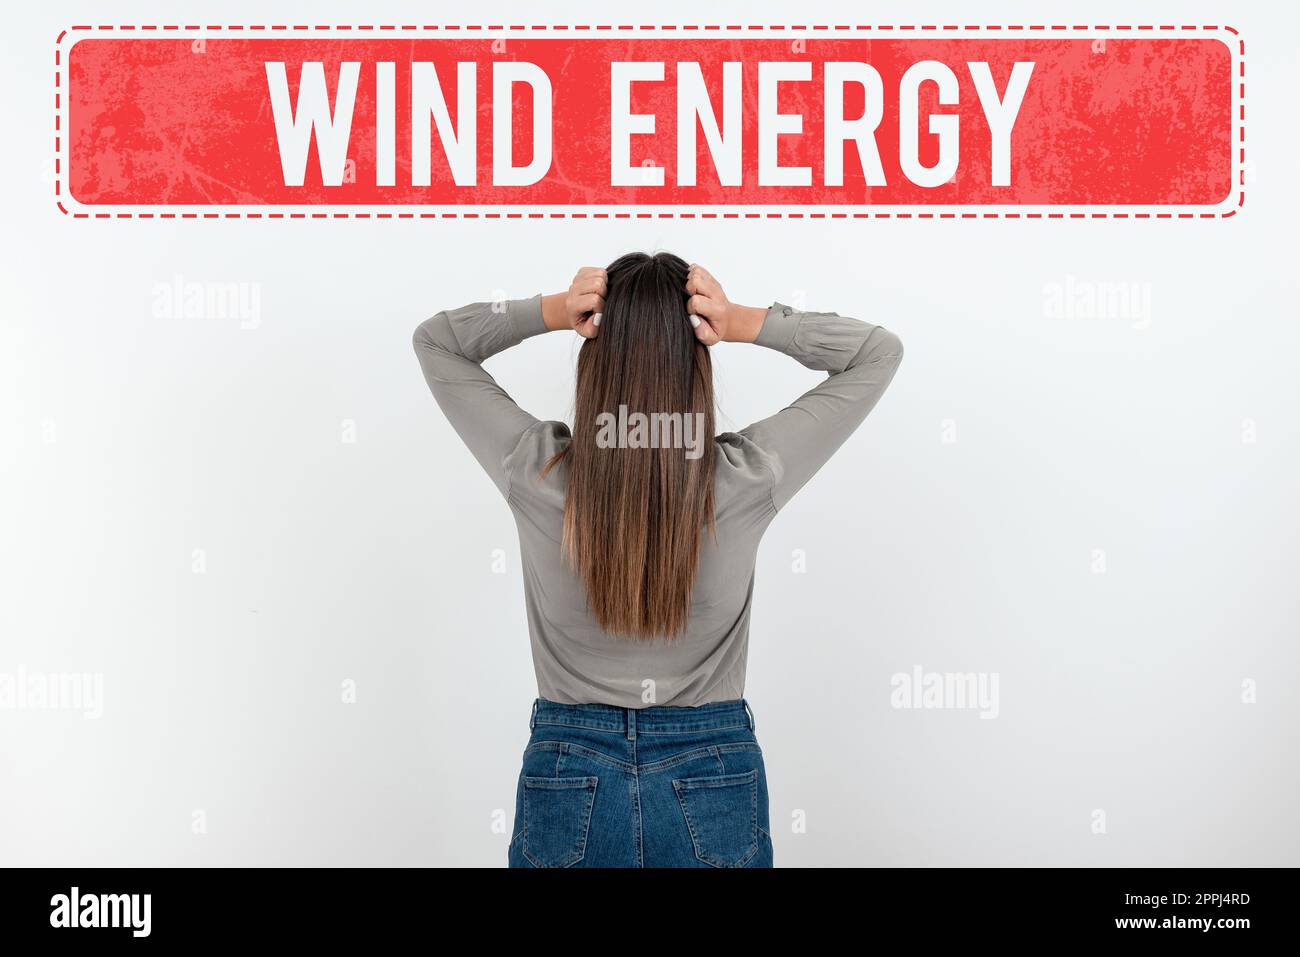 Textunterschrift für Windenergie. Konzeptfoto der Prozess, bei dem Wind zur Stromerzeugung verwendet wird Stockfoto